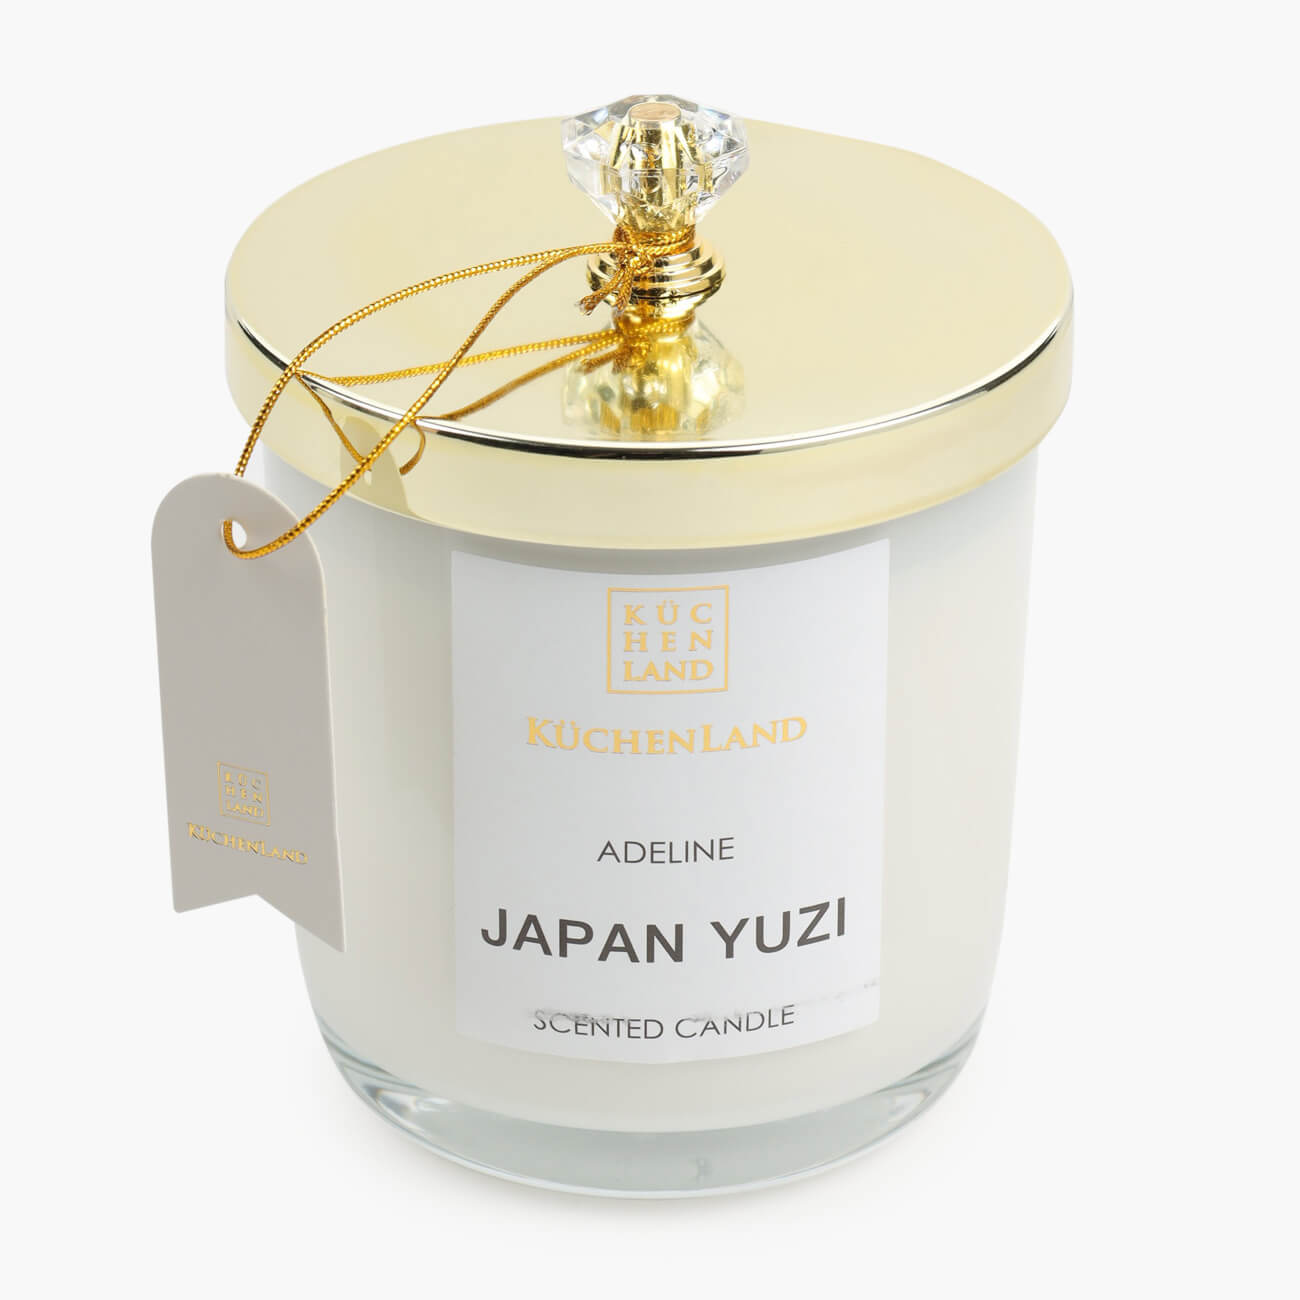 Свеча ароматическая, 9 см, в подсвечнике, с крышкой, стекло, Japan Yuzi, Adeline ароматическая свеча пробная yankee candle ение вишни 1542840e